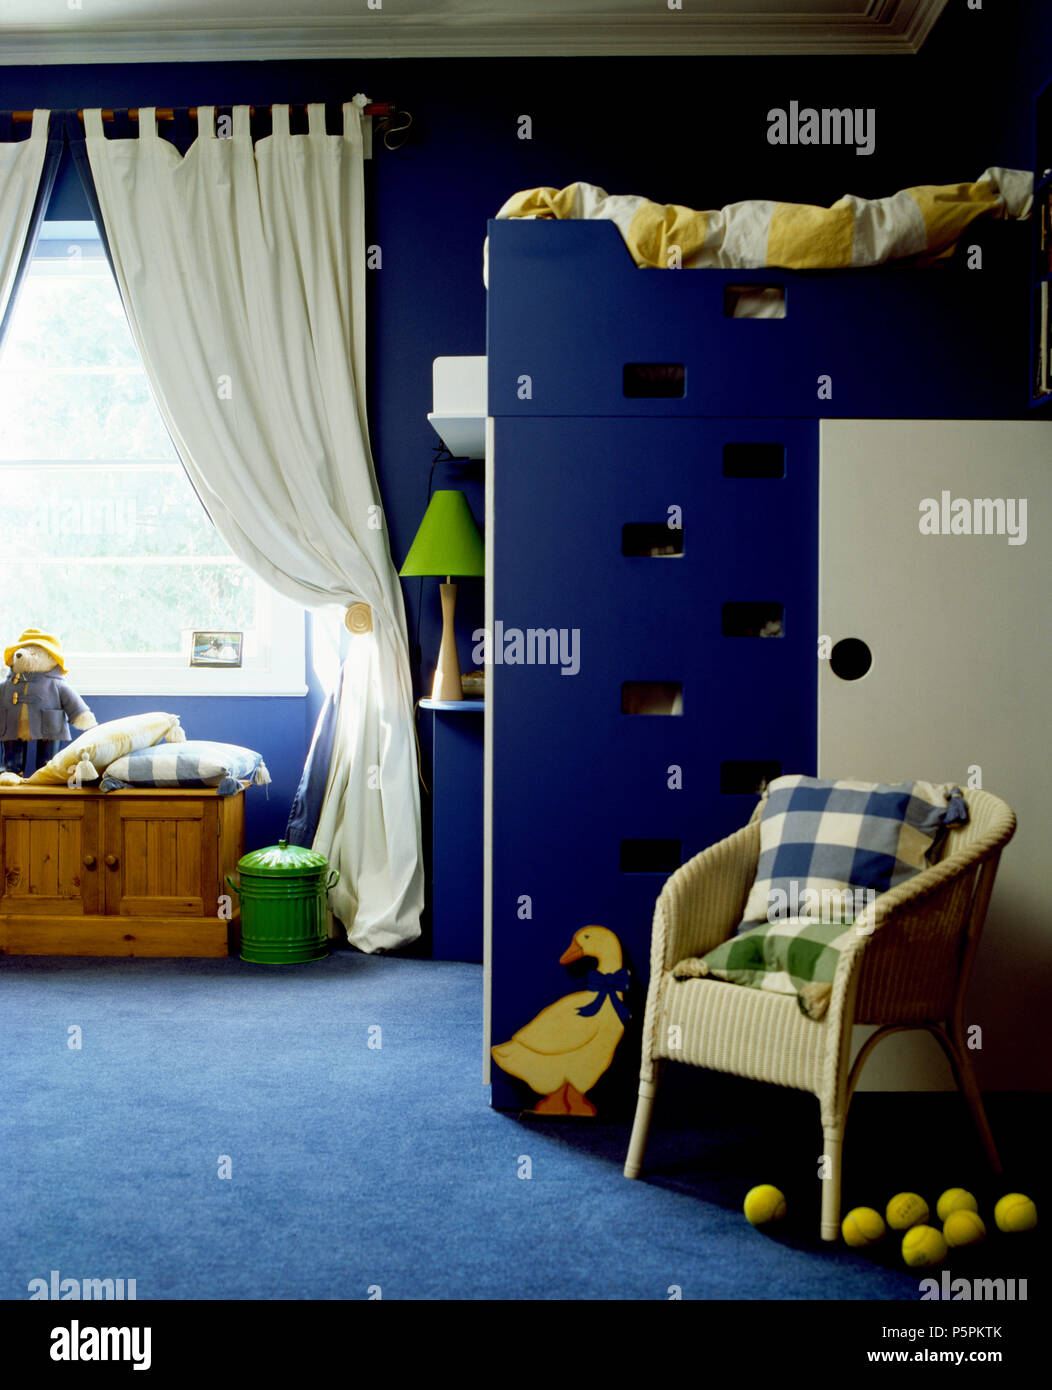 Weiß Lloyd Loom Sessel vor ofbunk Betten in blau Kinderzimmer mit blauem  Teppich und weißen Vorhängen Stockfotografie - Alamy